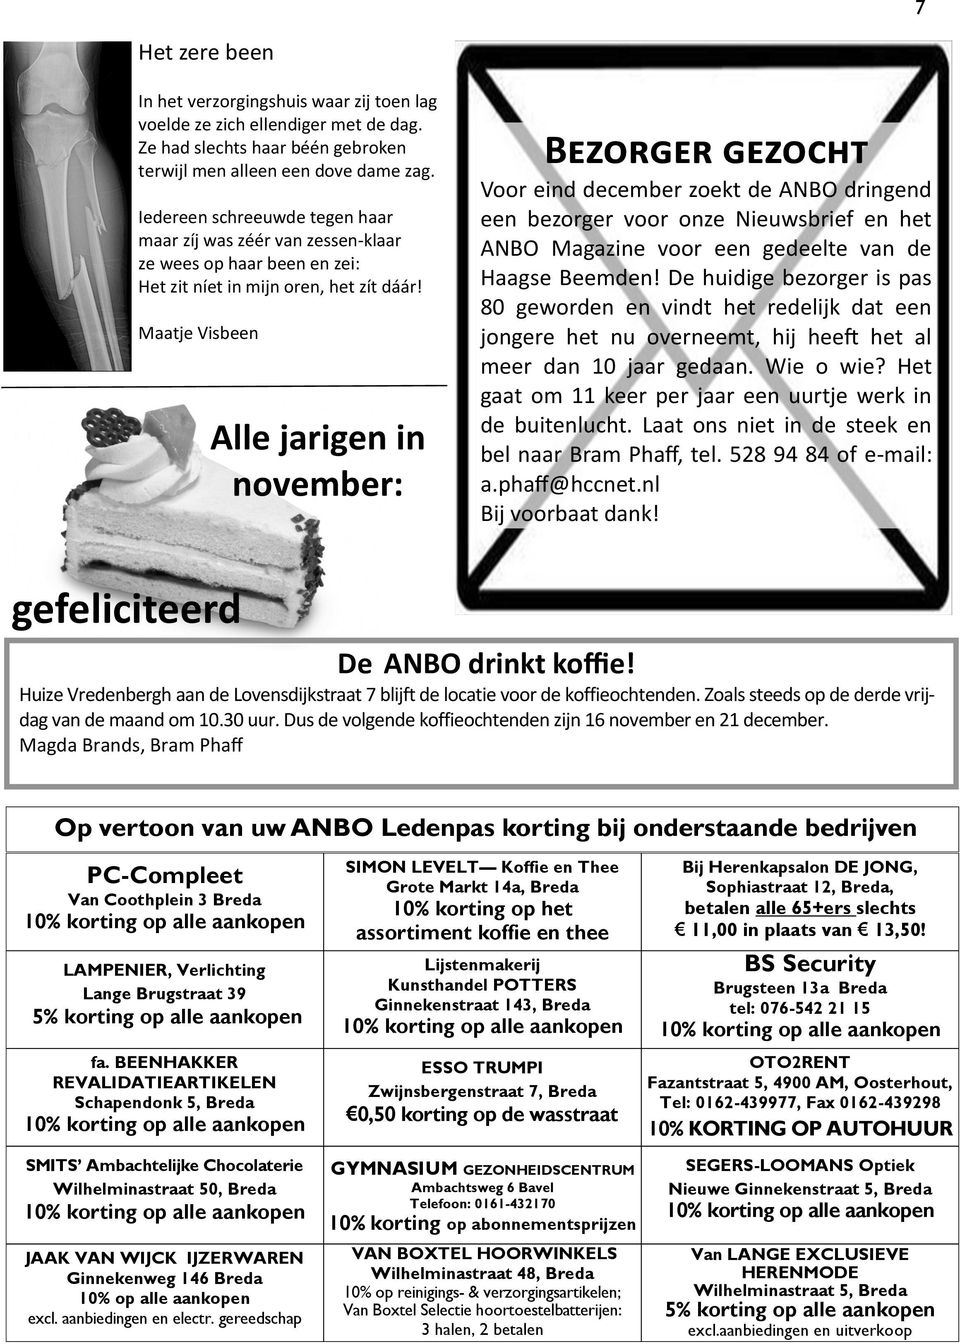 Maatje Visbeen Alle jarigen in november: Bezorger gezocht Voor eind december zoekt de ANBO dringend een bezorger voor onze Nieuwsbrief en het ANBO Magazine voor een gedeelte van de Haagse Beemden!